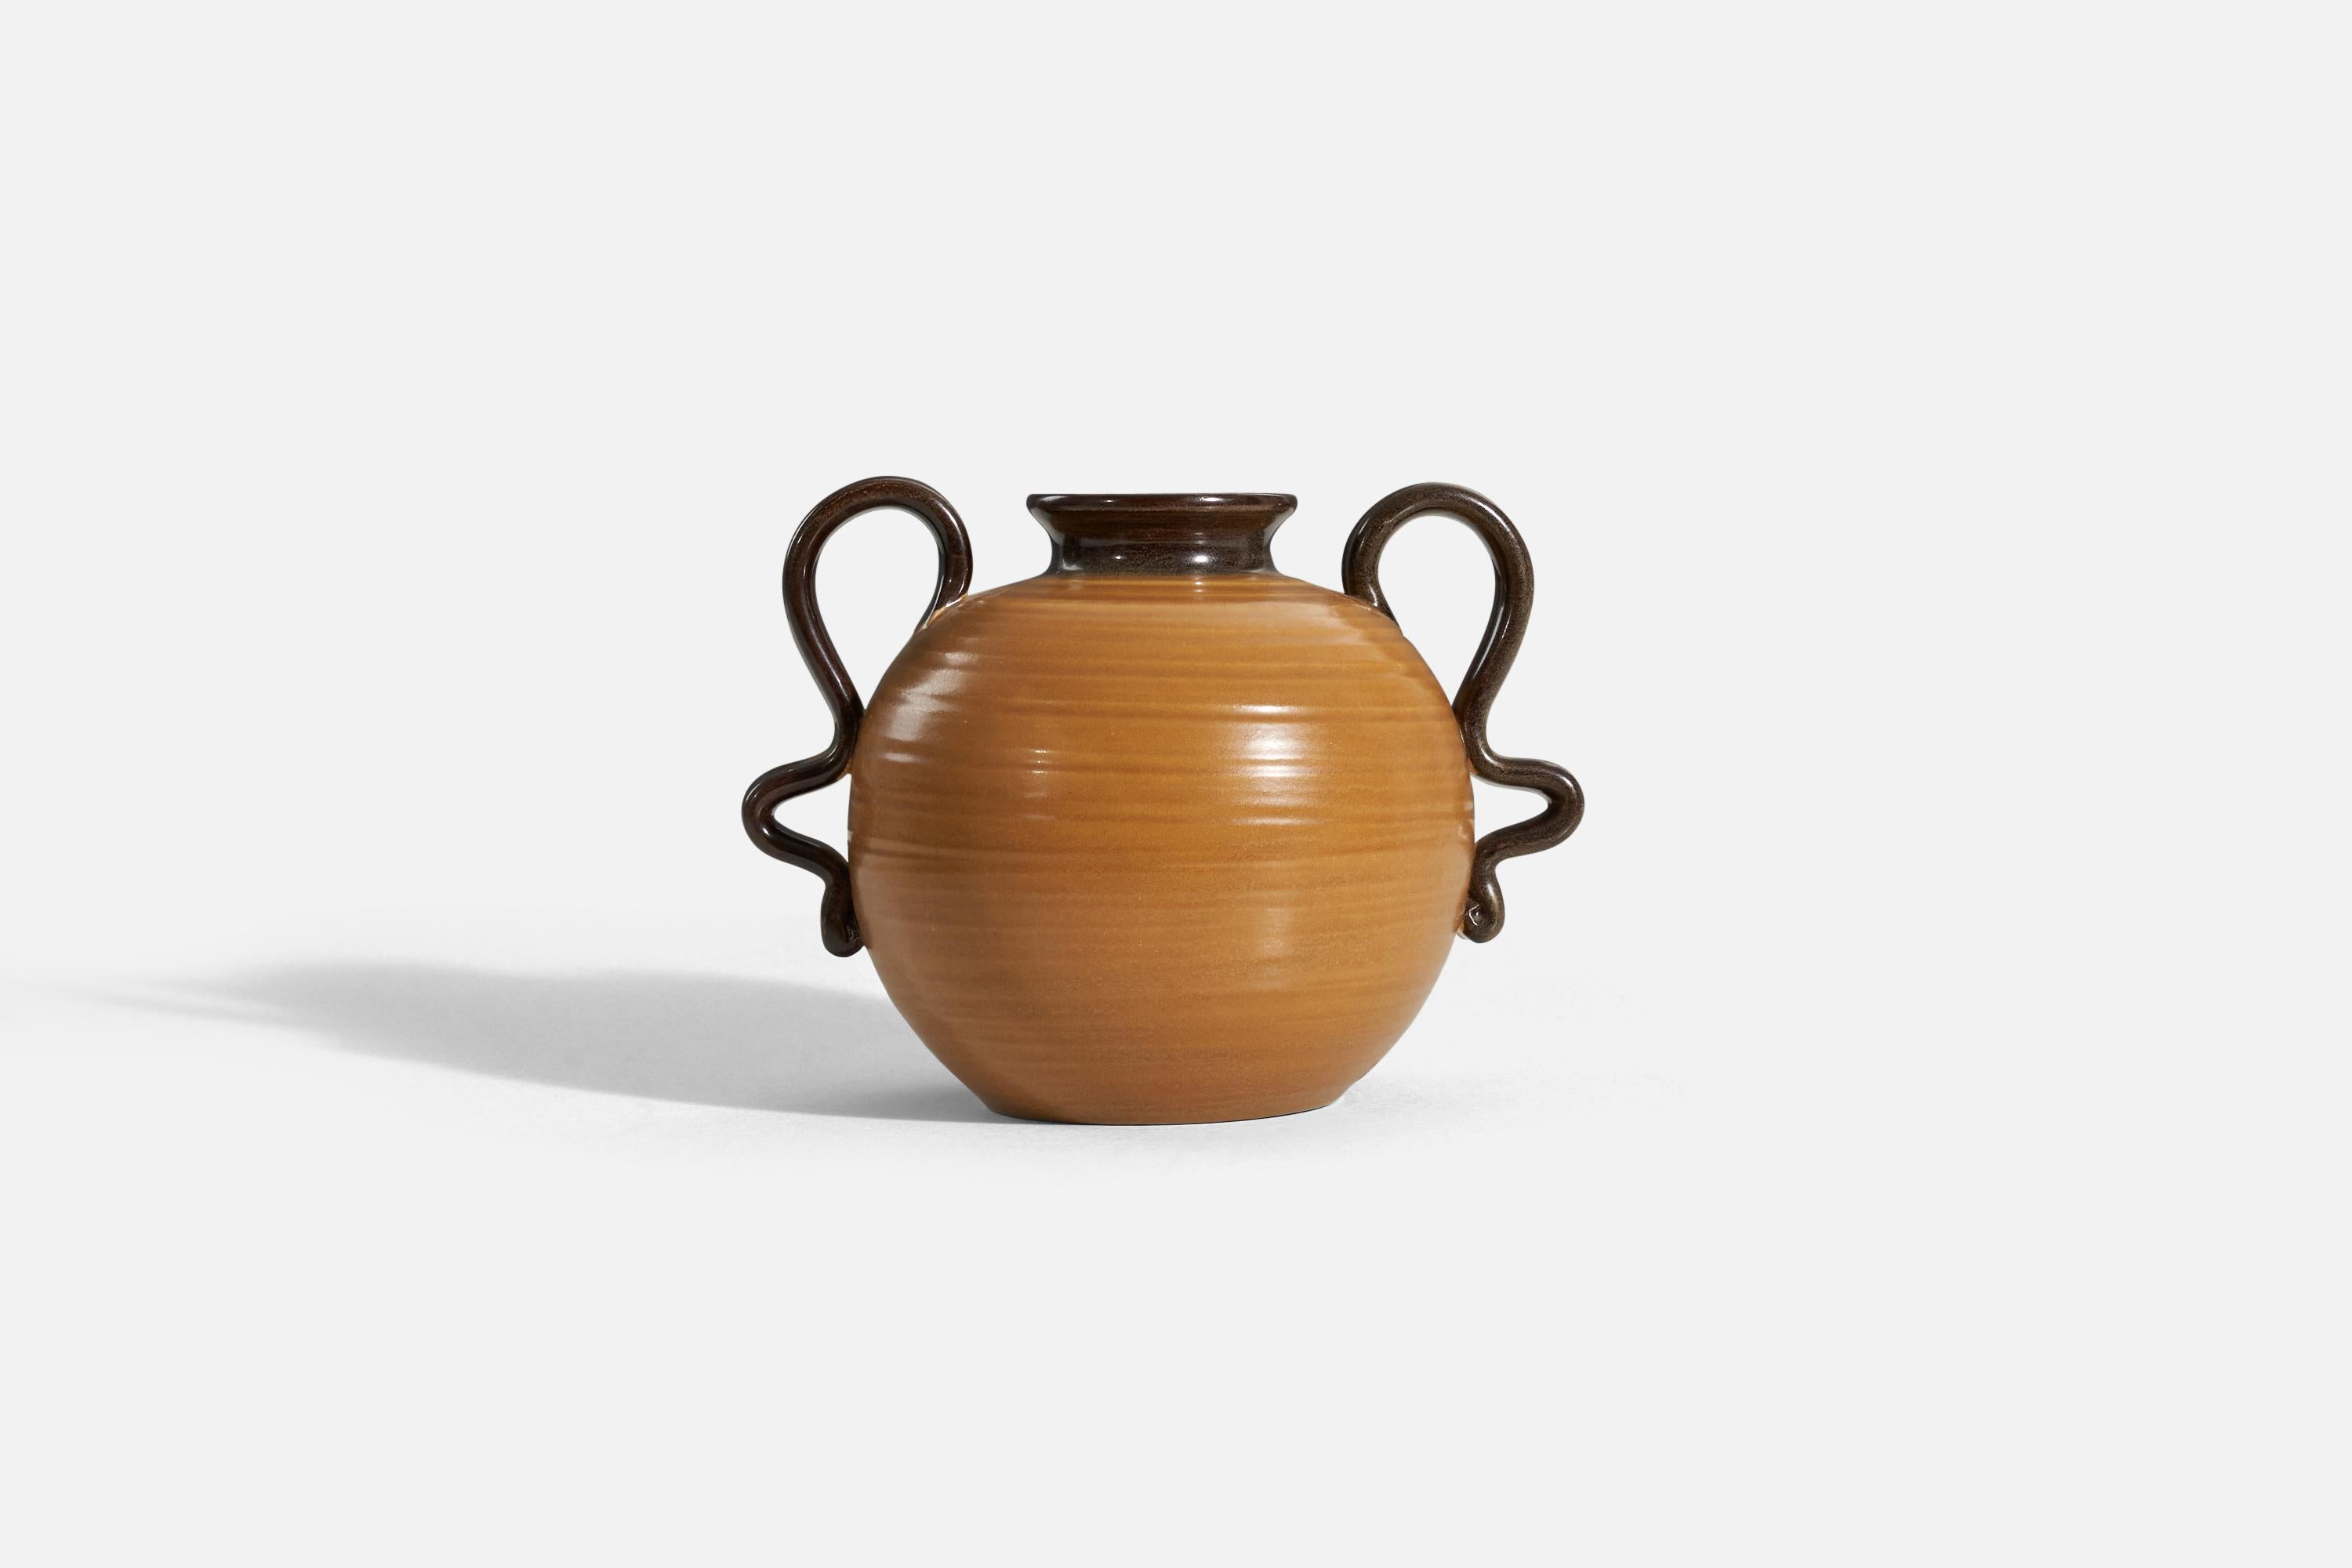 A caramel brown, glazed stoneware vase designed by Eva Jancke Björk and produced by Bo Fajans Gefle, Sweden, 1940s.

